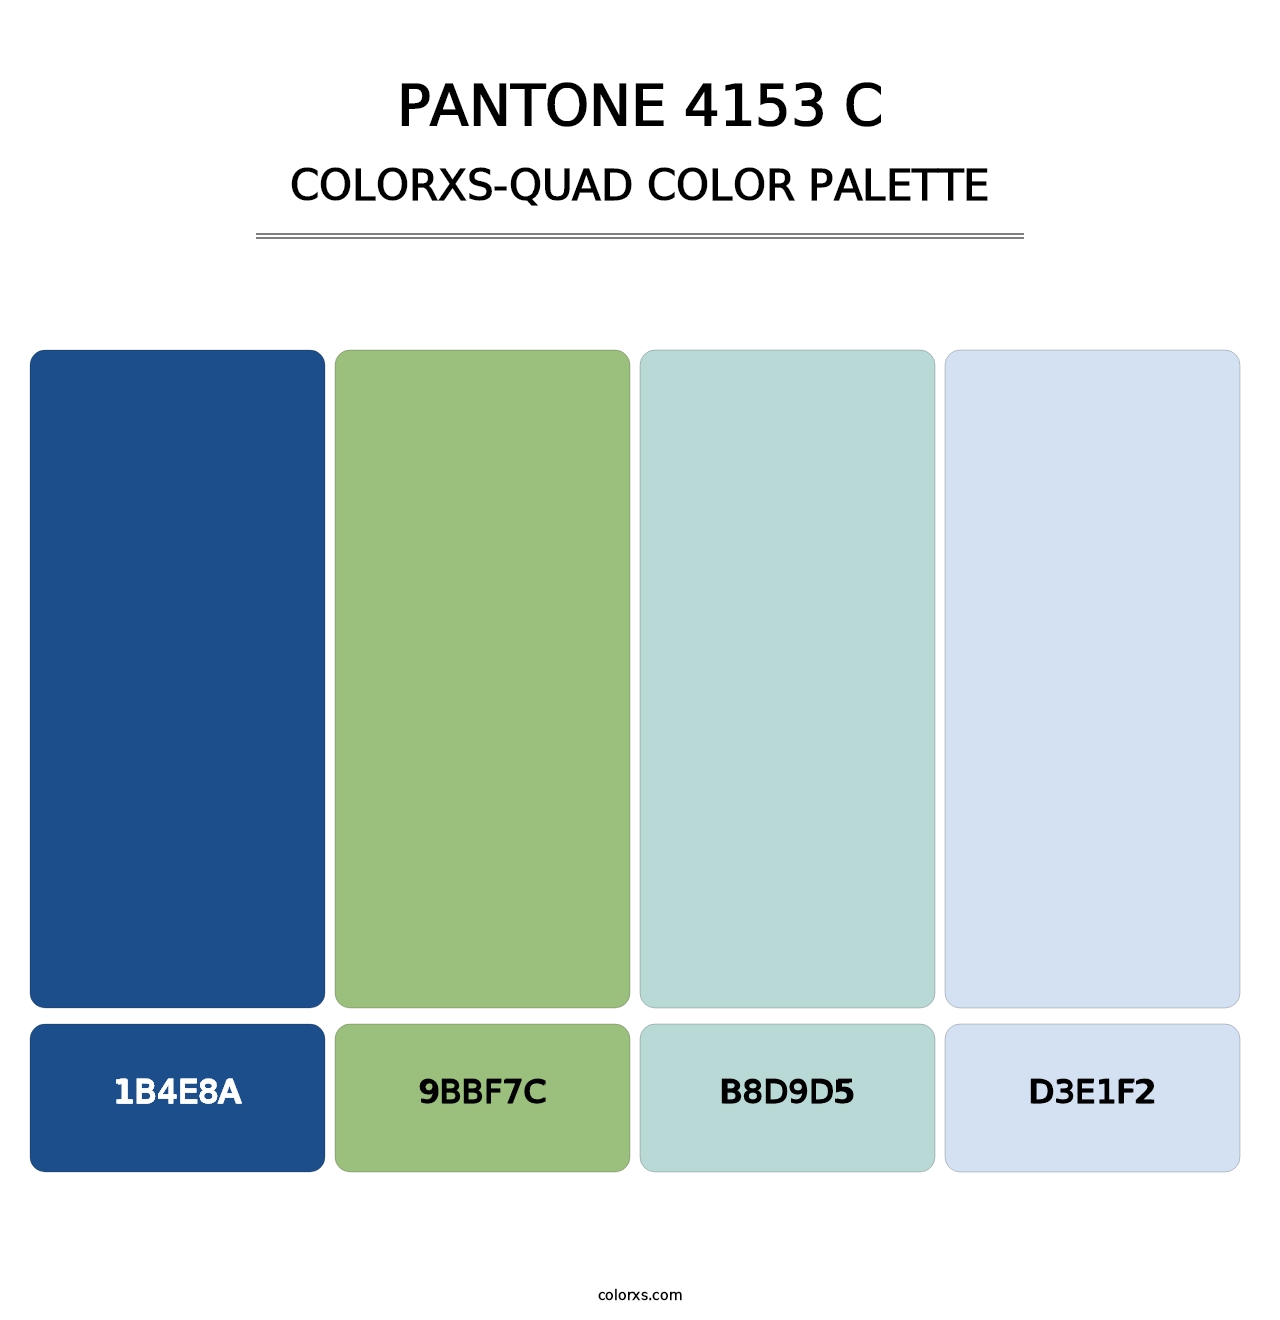 PANTONE 4153 C - Colorxs Quad Palette